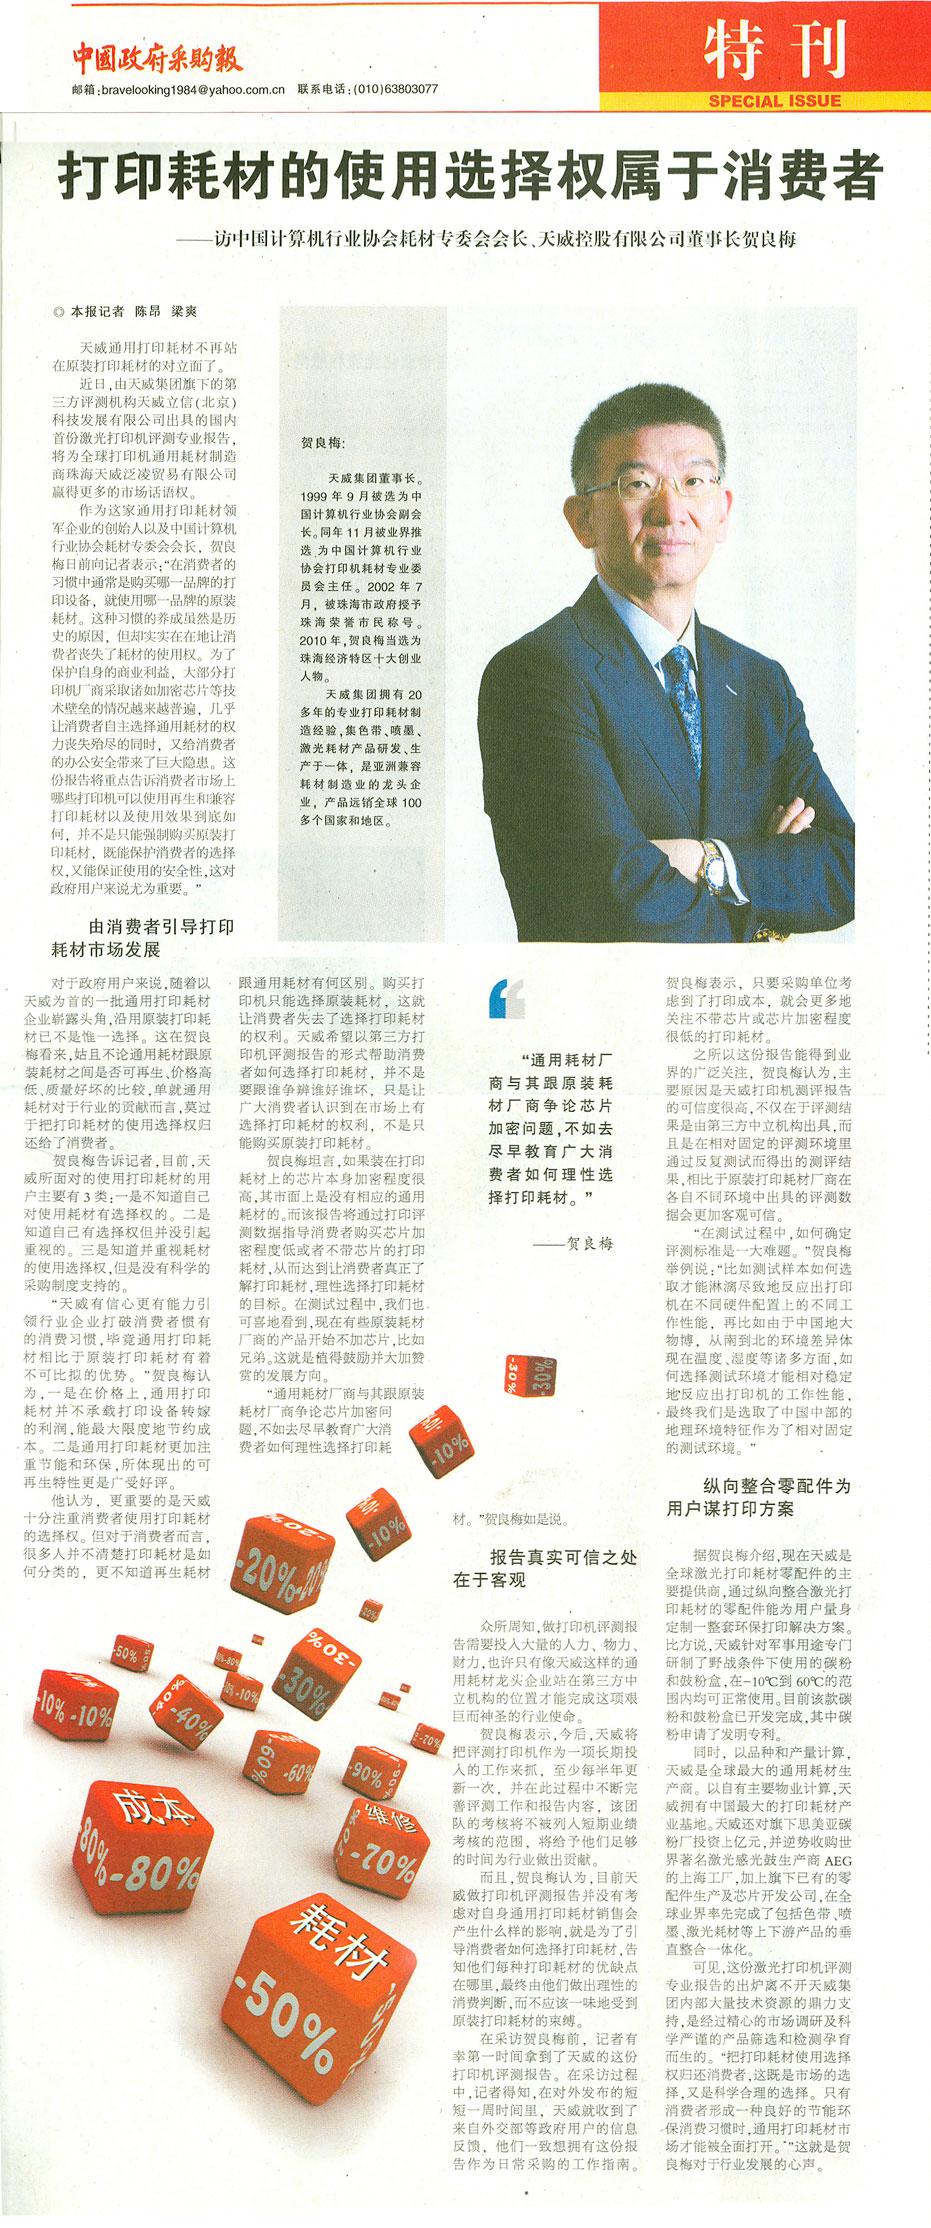 《中国政府采购报》贺良梅先生专访报道：打印耗材的使用选择权属于消费者